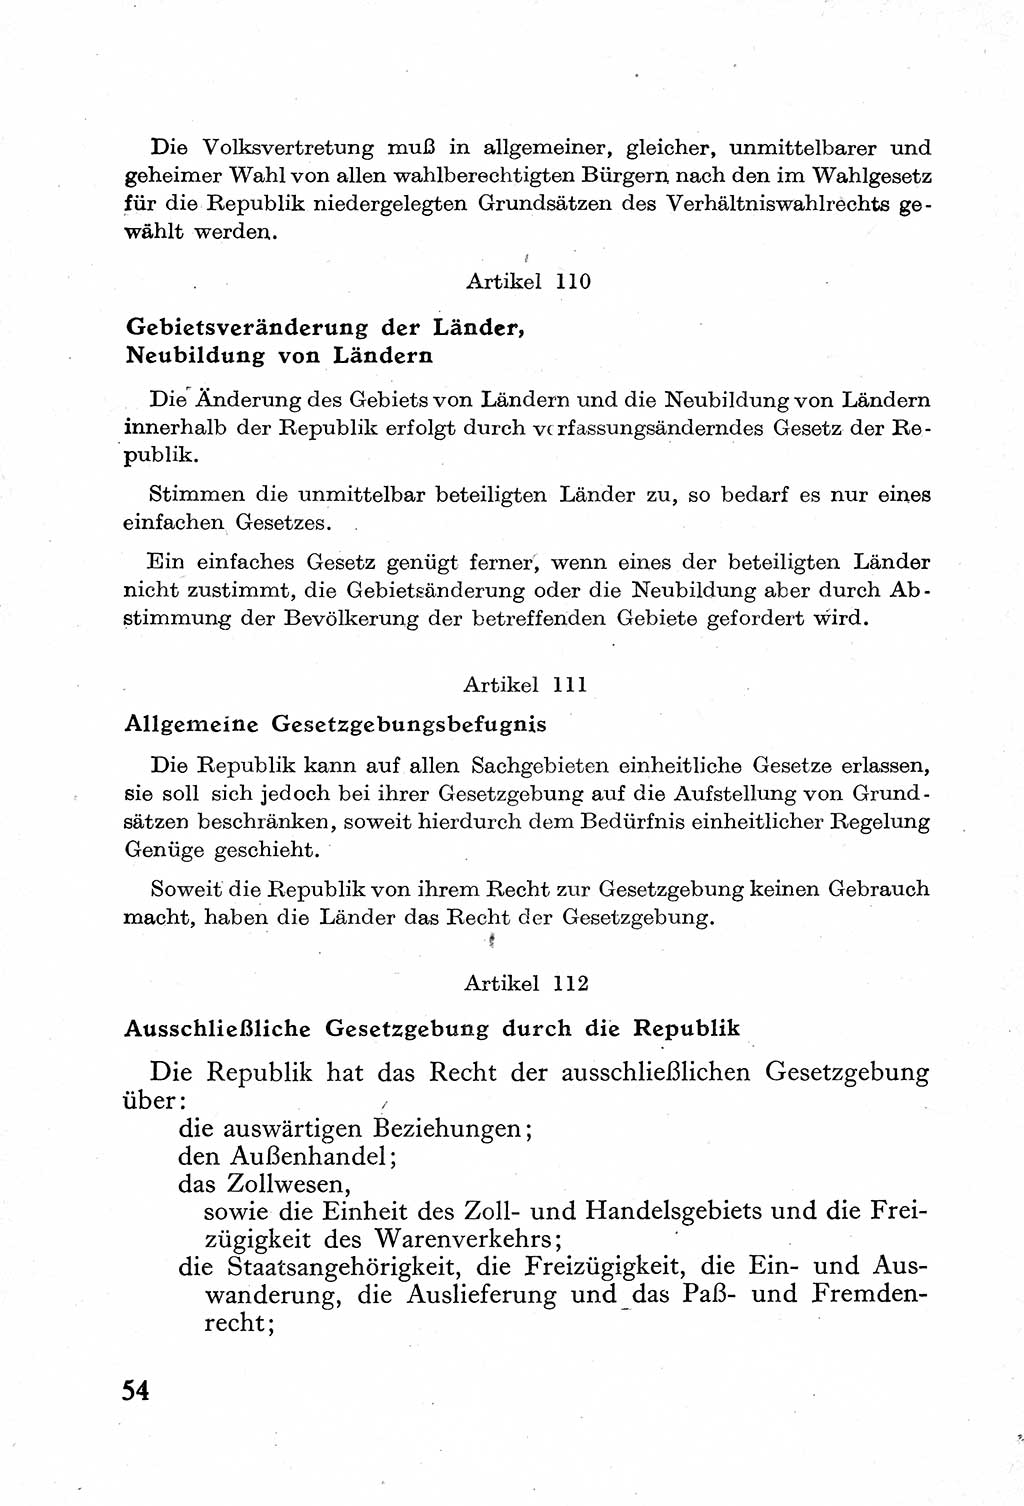 Verfassung der Deutschen Demokratischen Republik (DDR) mit einer Einleitung von Karl Steinhoff 1949, Seite 54 (Verf. DDR Einl. K. S. 1949, S. 54)